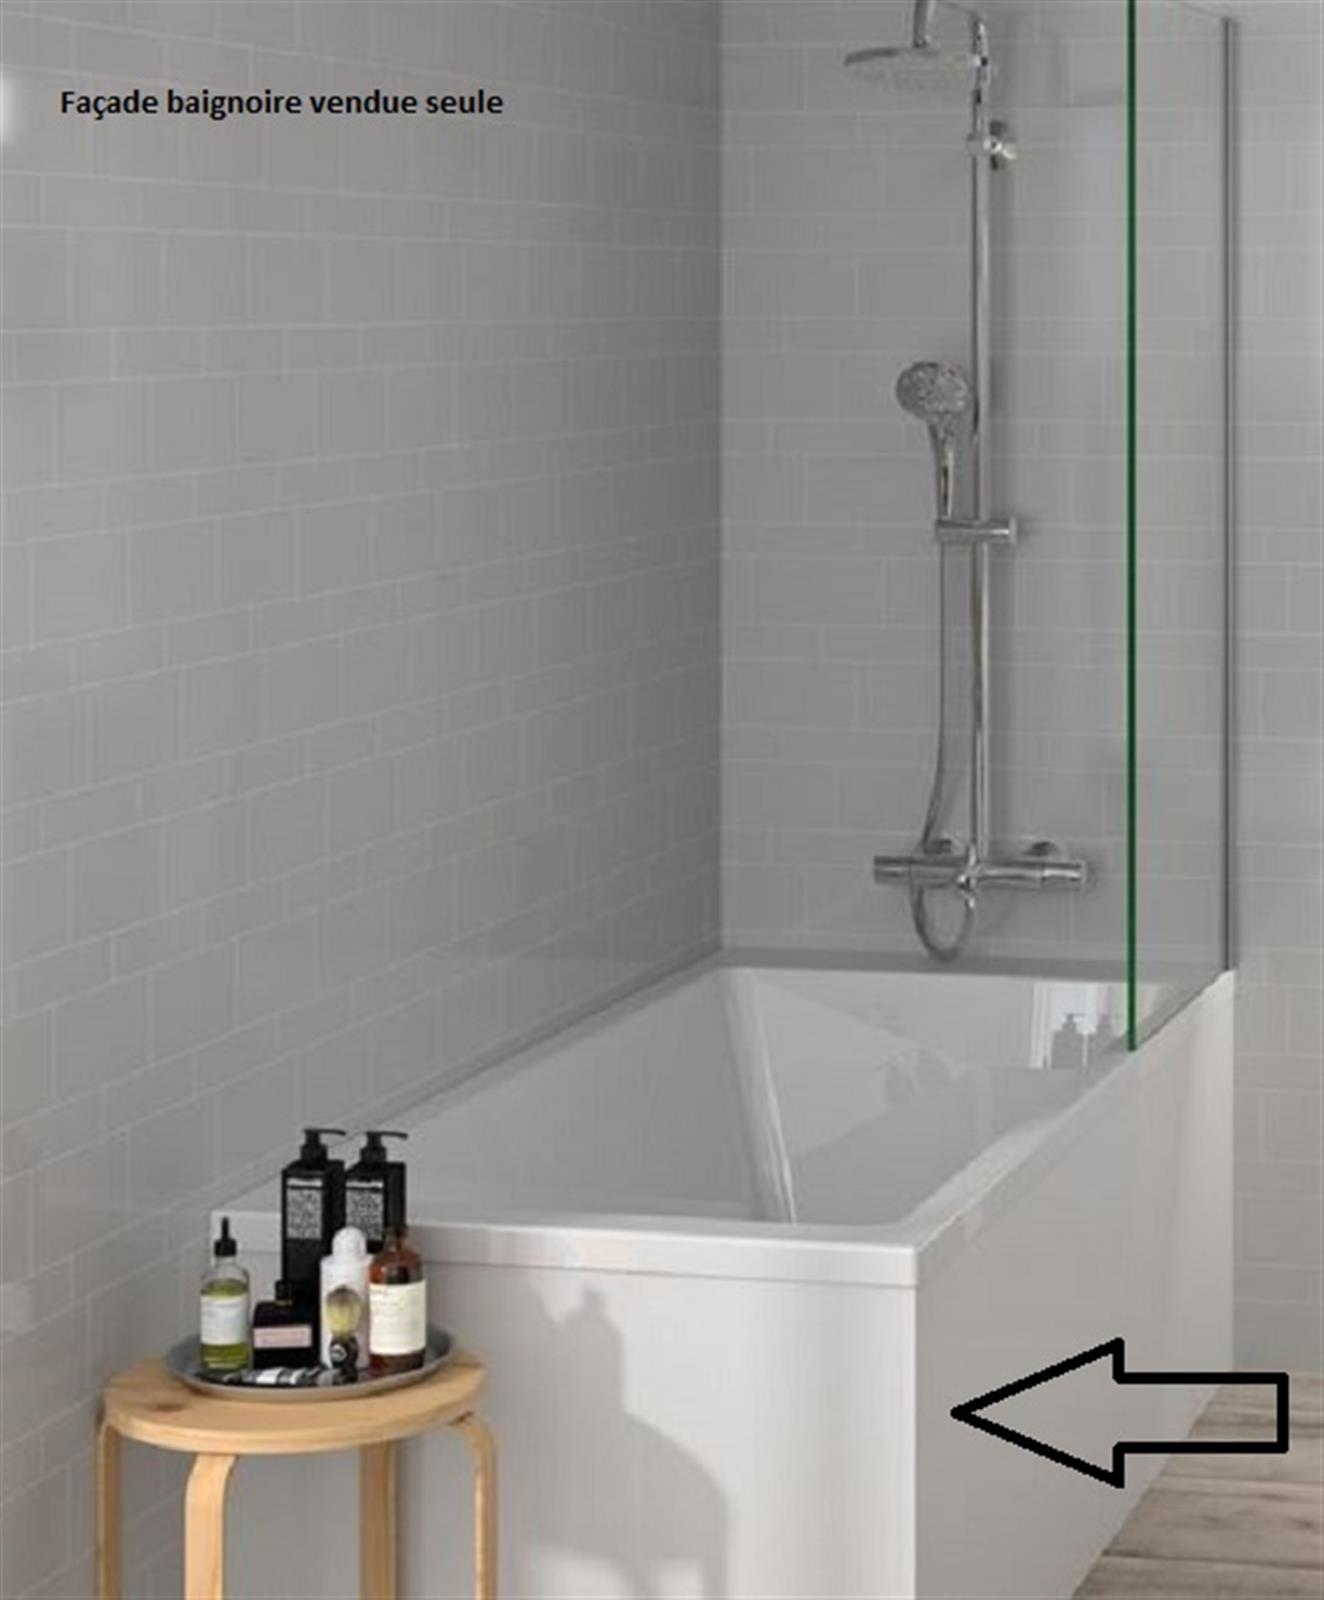 Façade de baignoire blanc - Façade de baignoire blanche - Longueur : 1400 mm- Hauteur : 535 mm- Épai